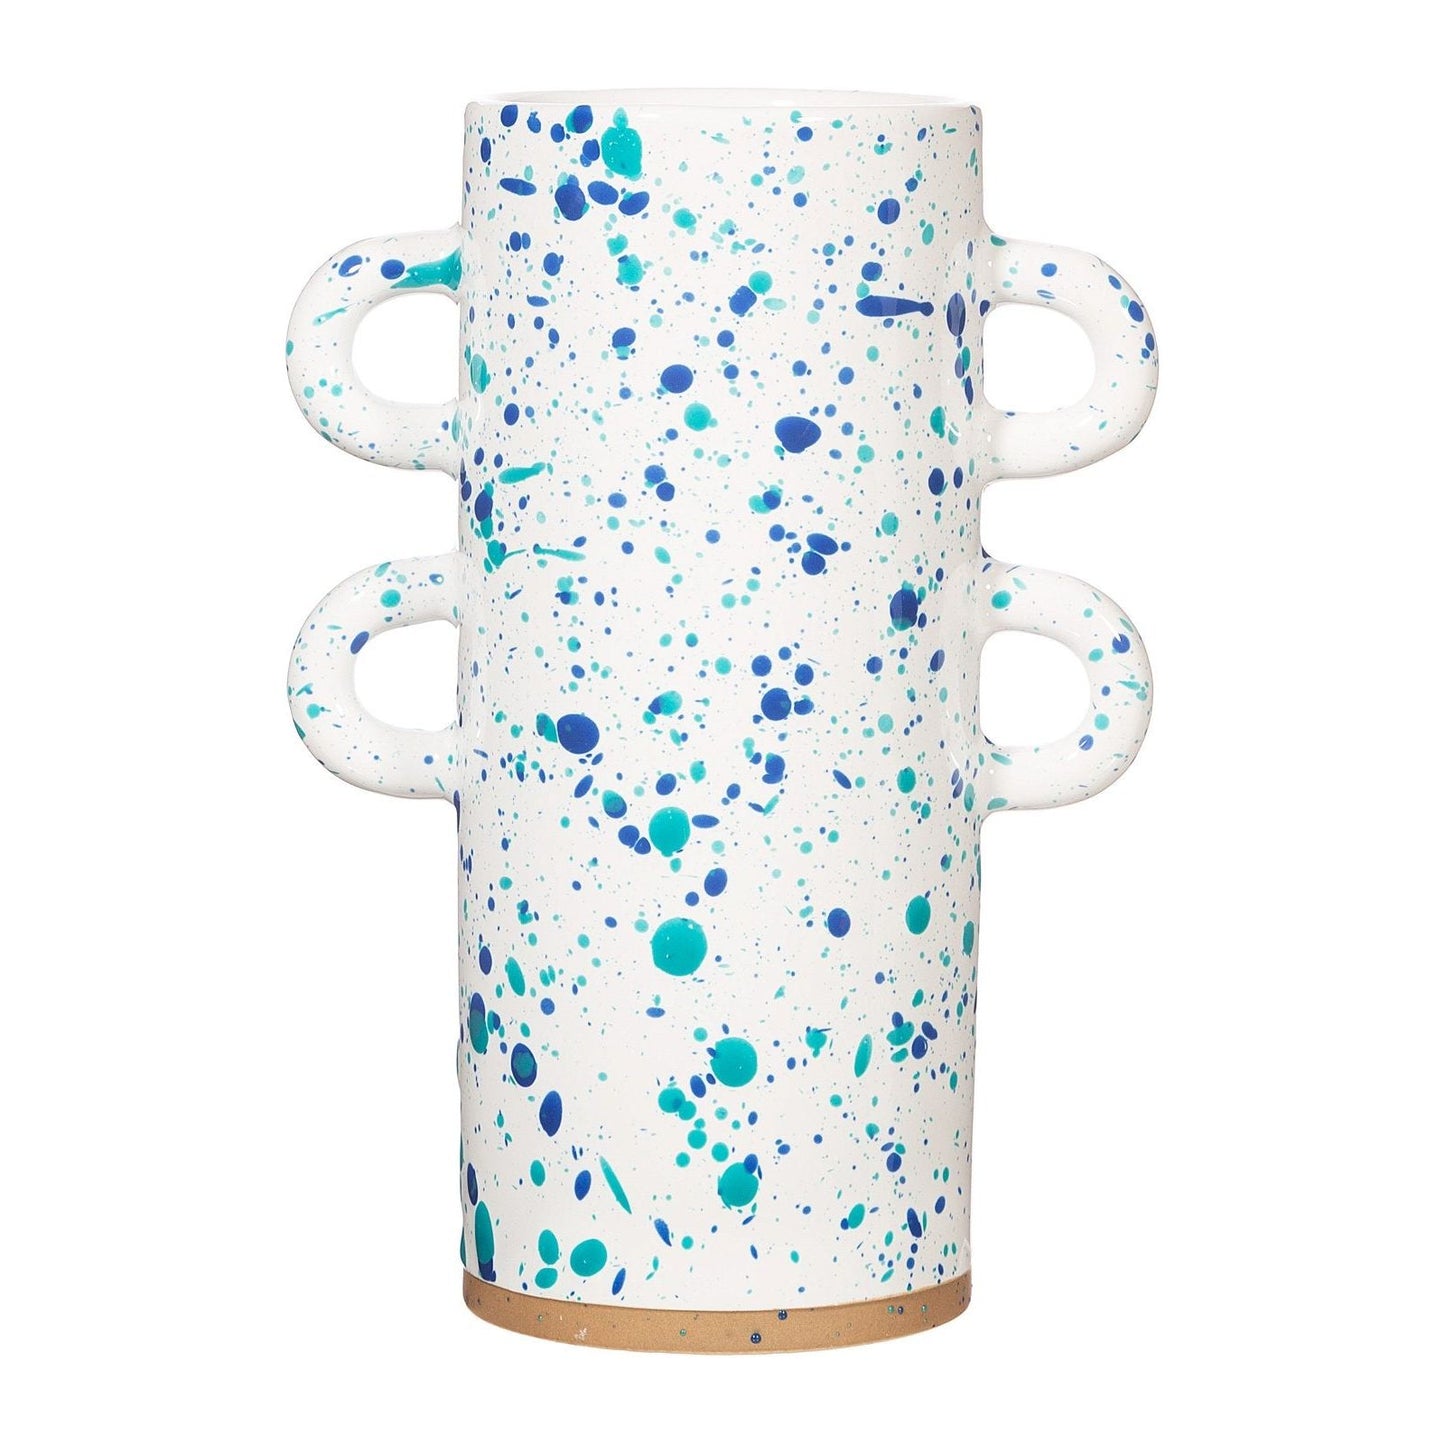 Turquoise and Blue Splatterware Large Vase - Ashton and Finch